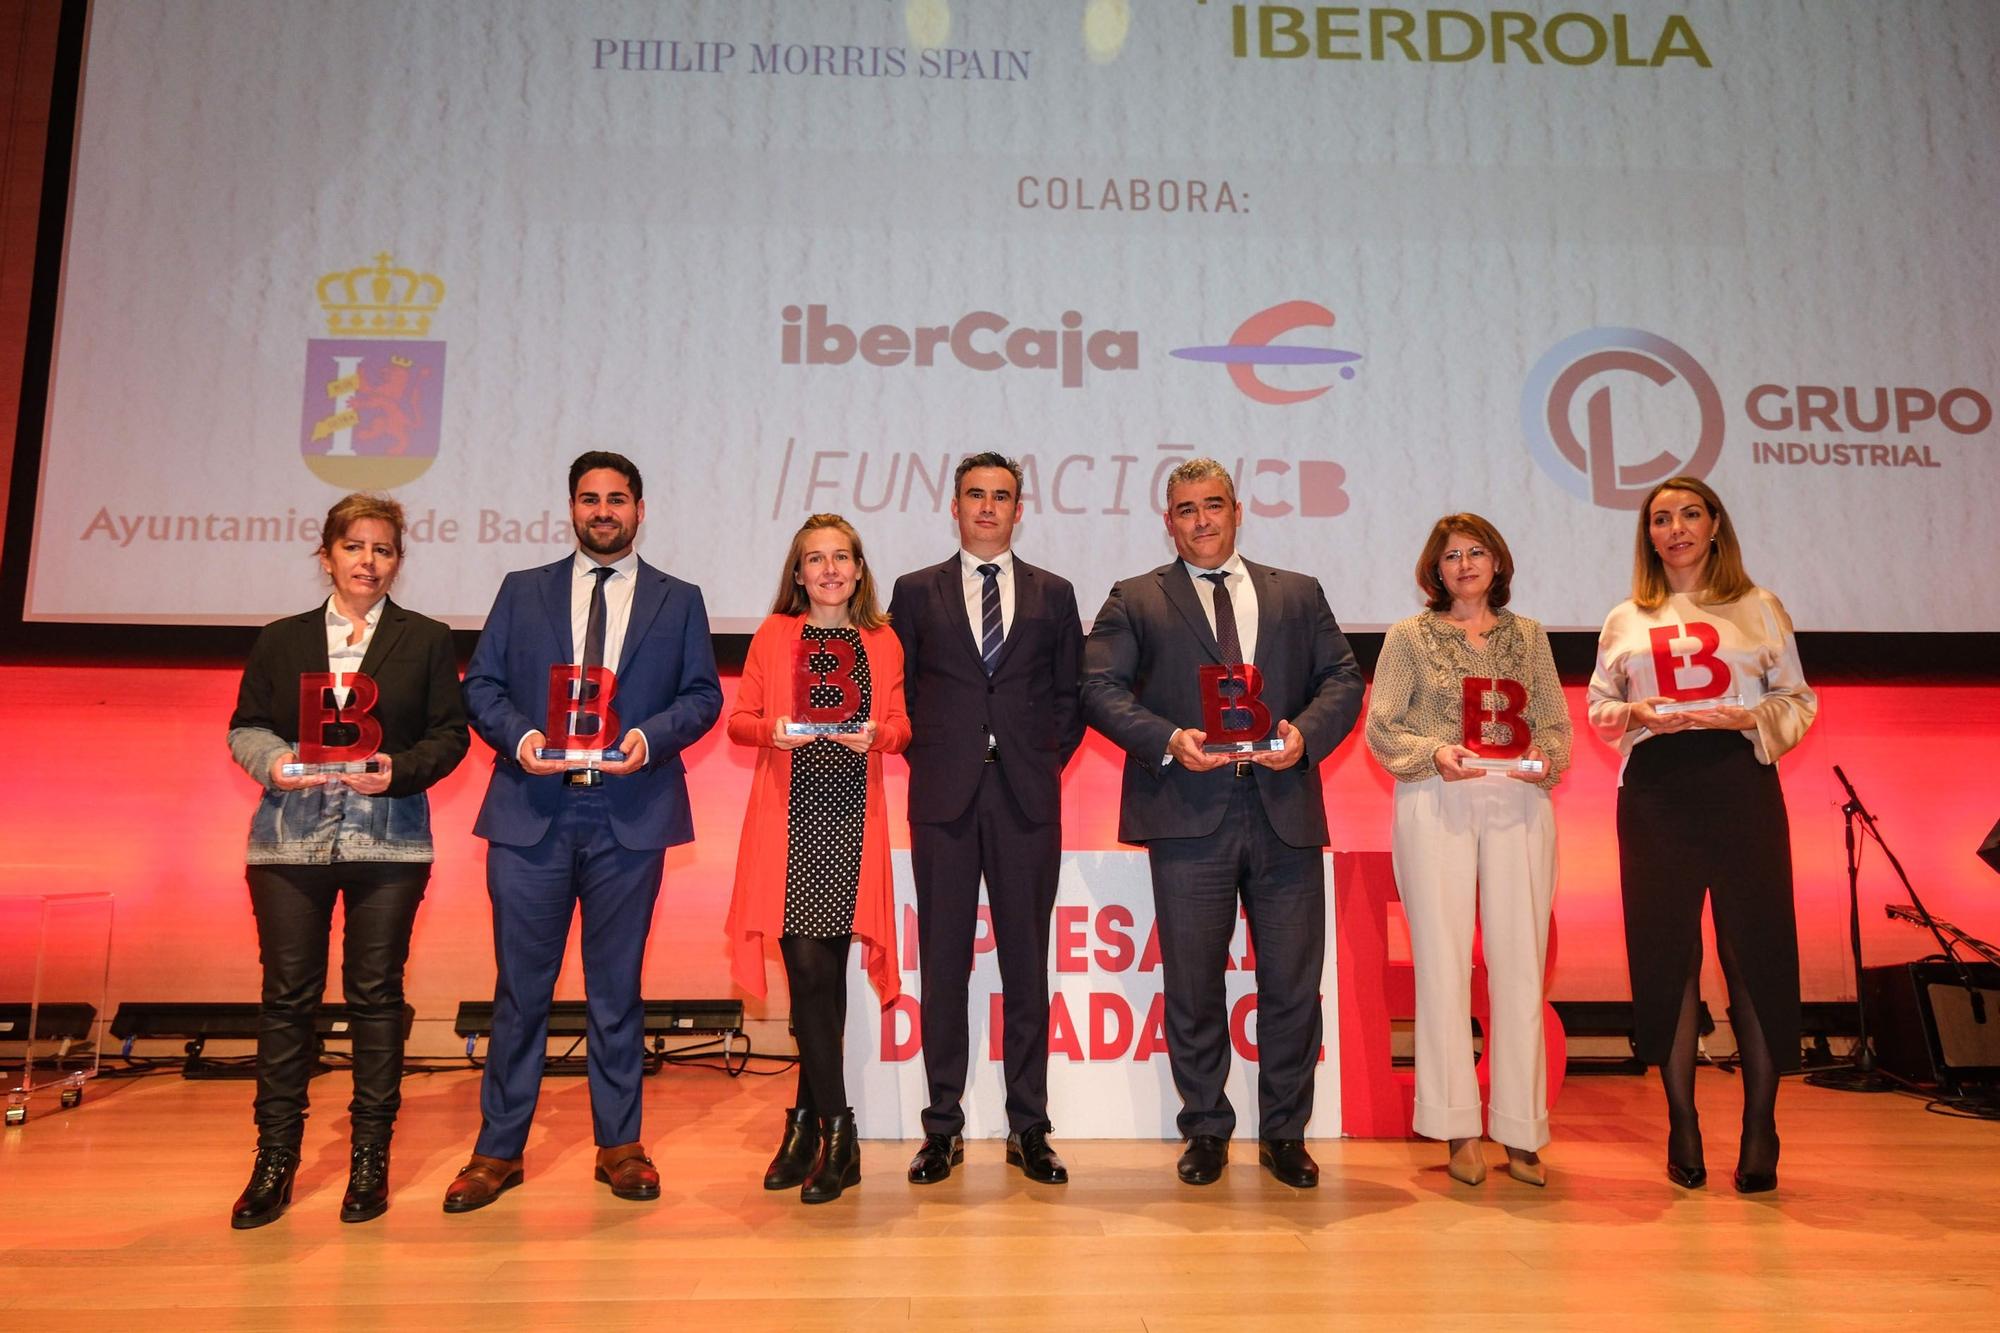 Las imágenes de los XII Premios Empresario de Badajoz